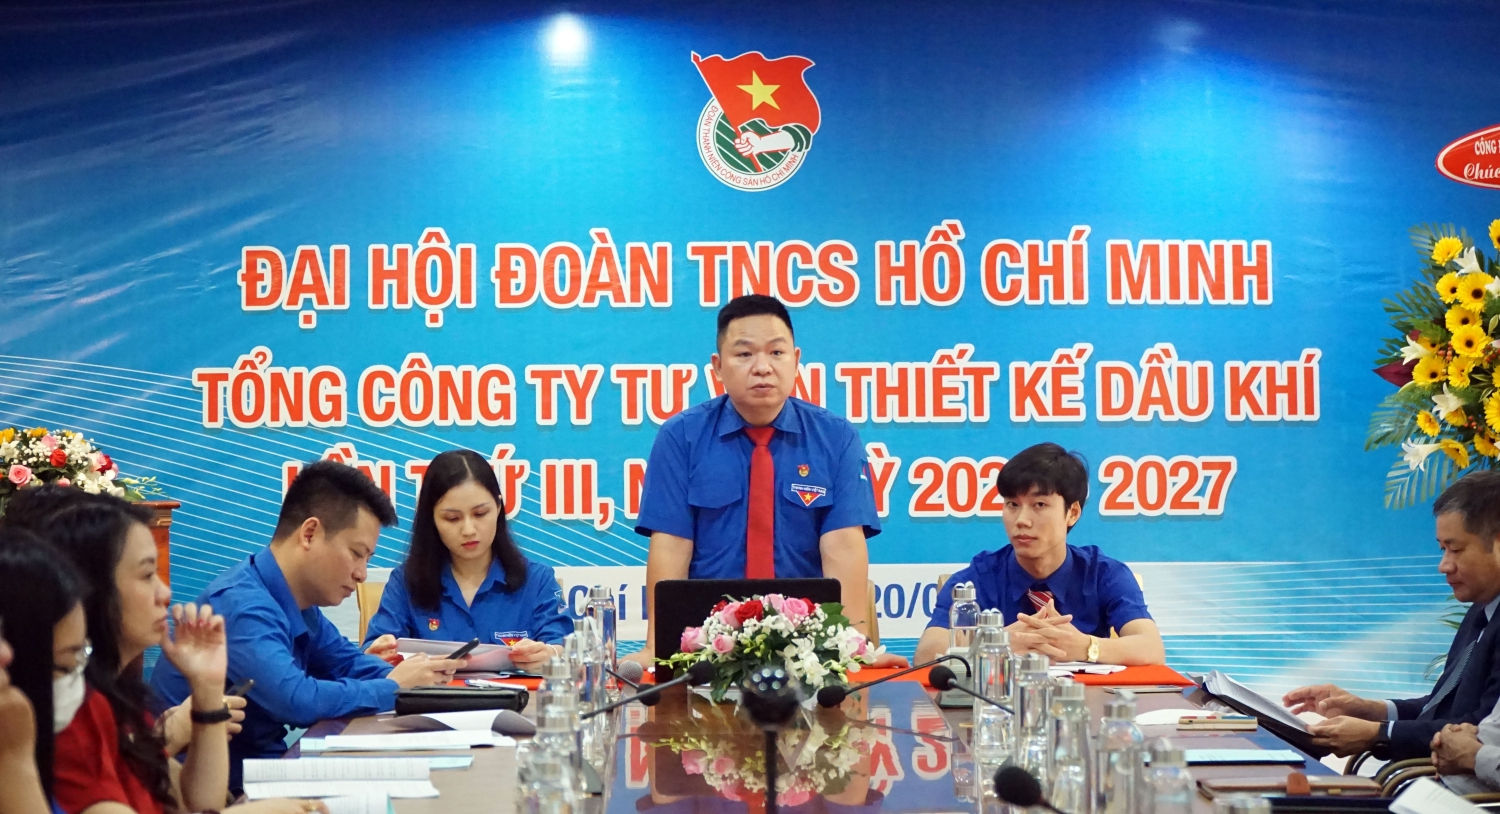 Đồng chí Đinh Tung Hoành - Bí thư Đoàn PVE báo cáo tại Đại hội